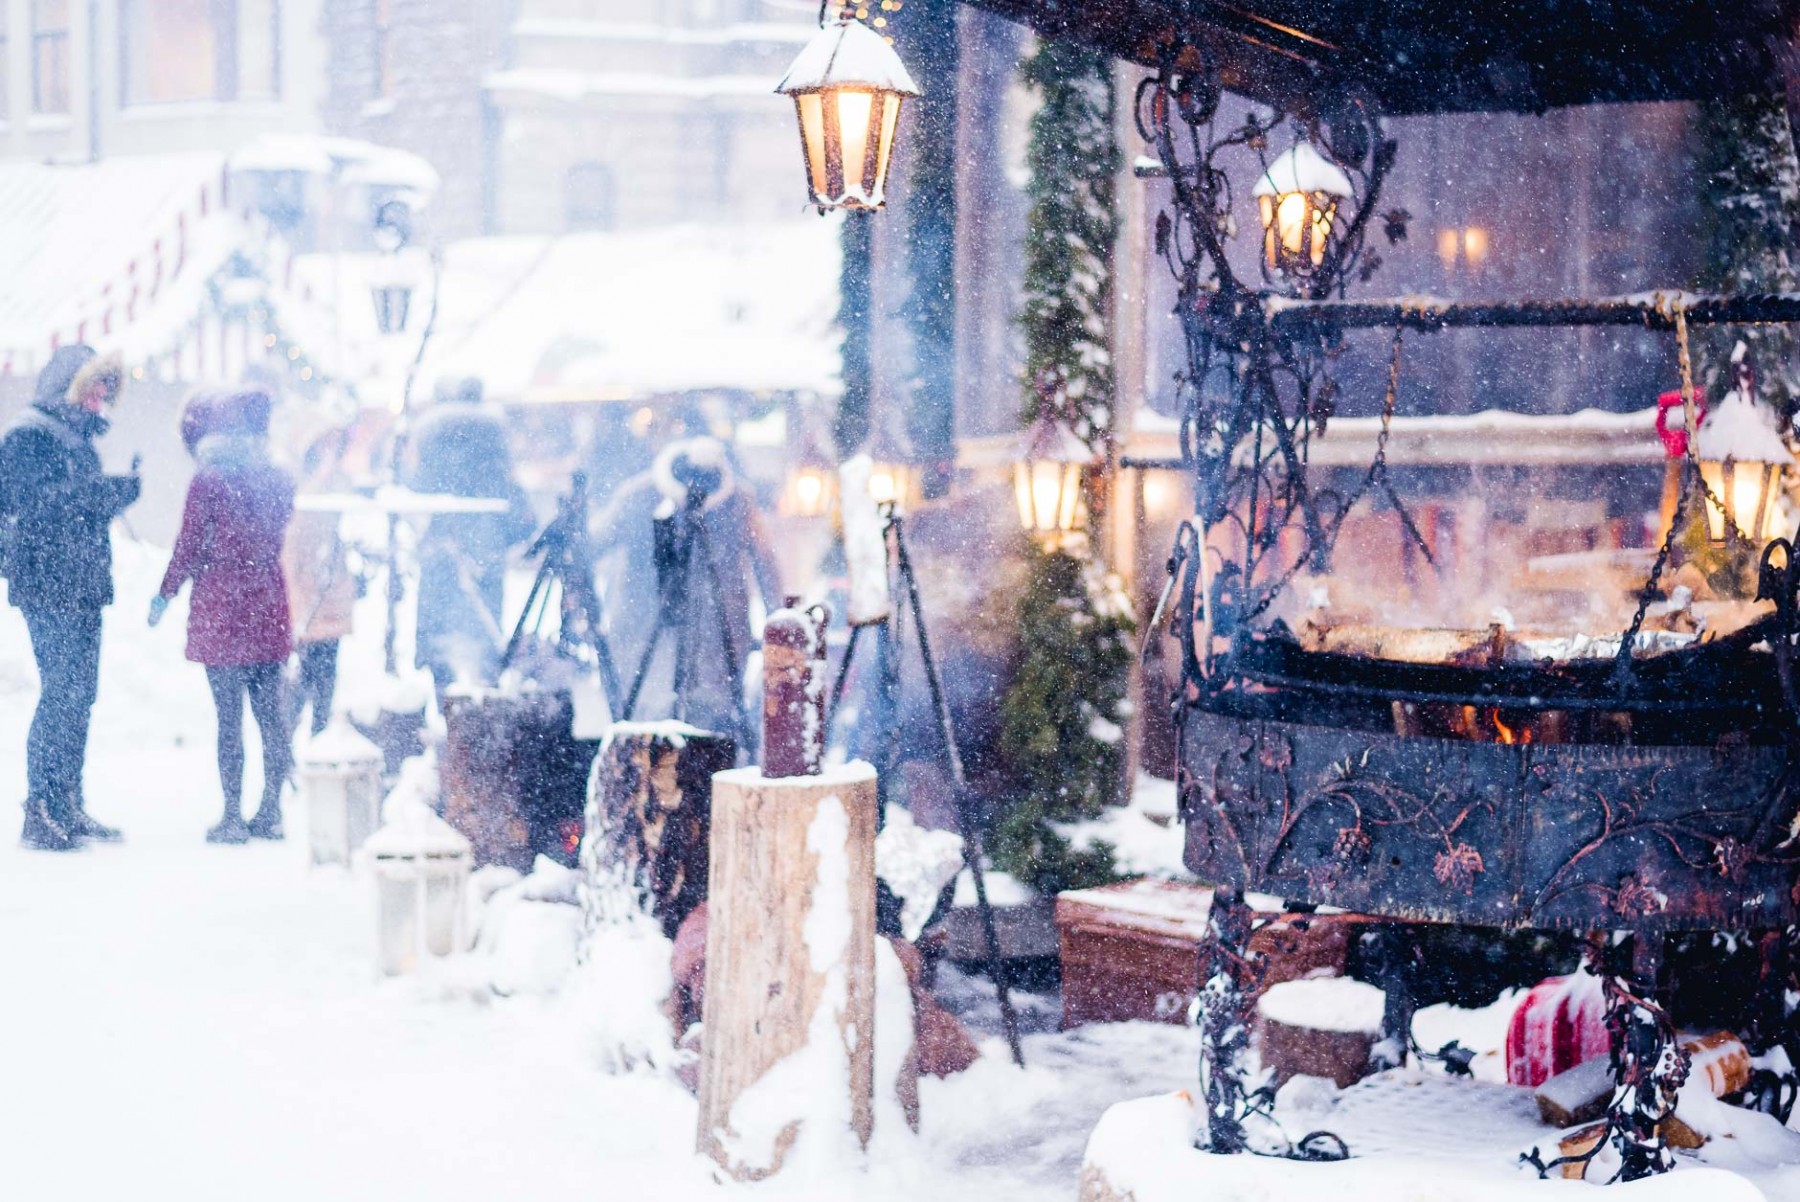 Snowy Riga, Latvia in January